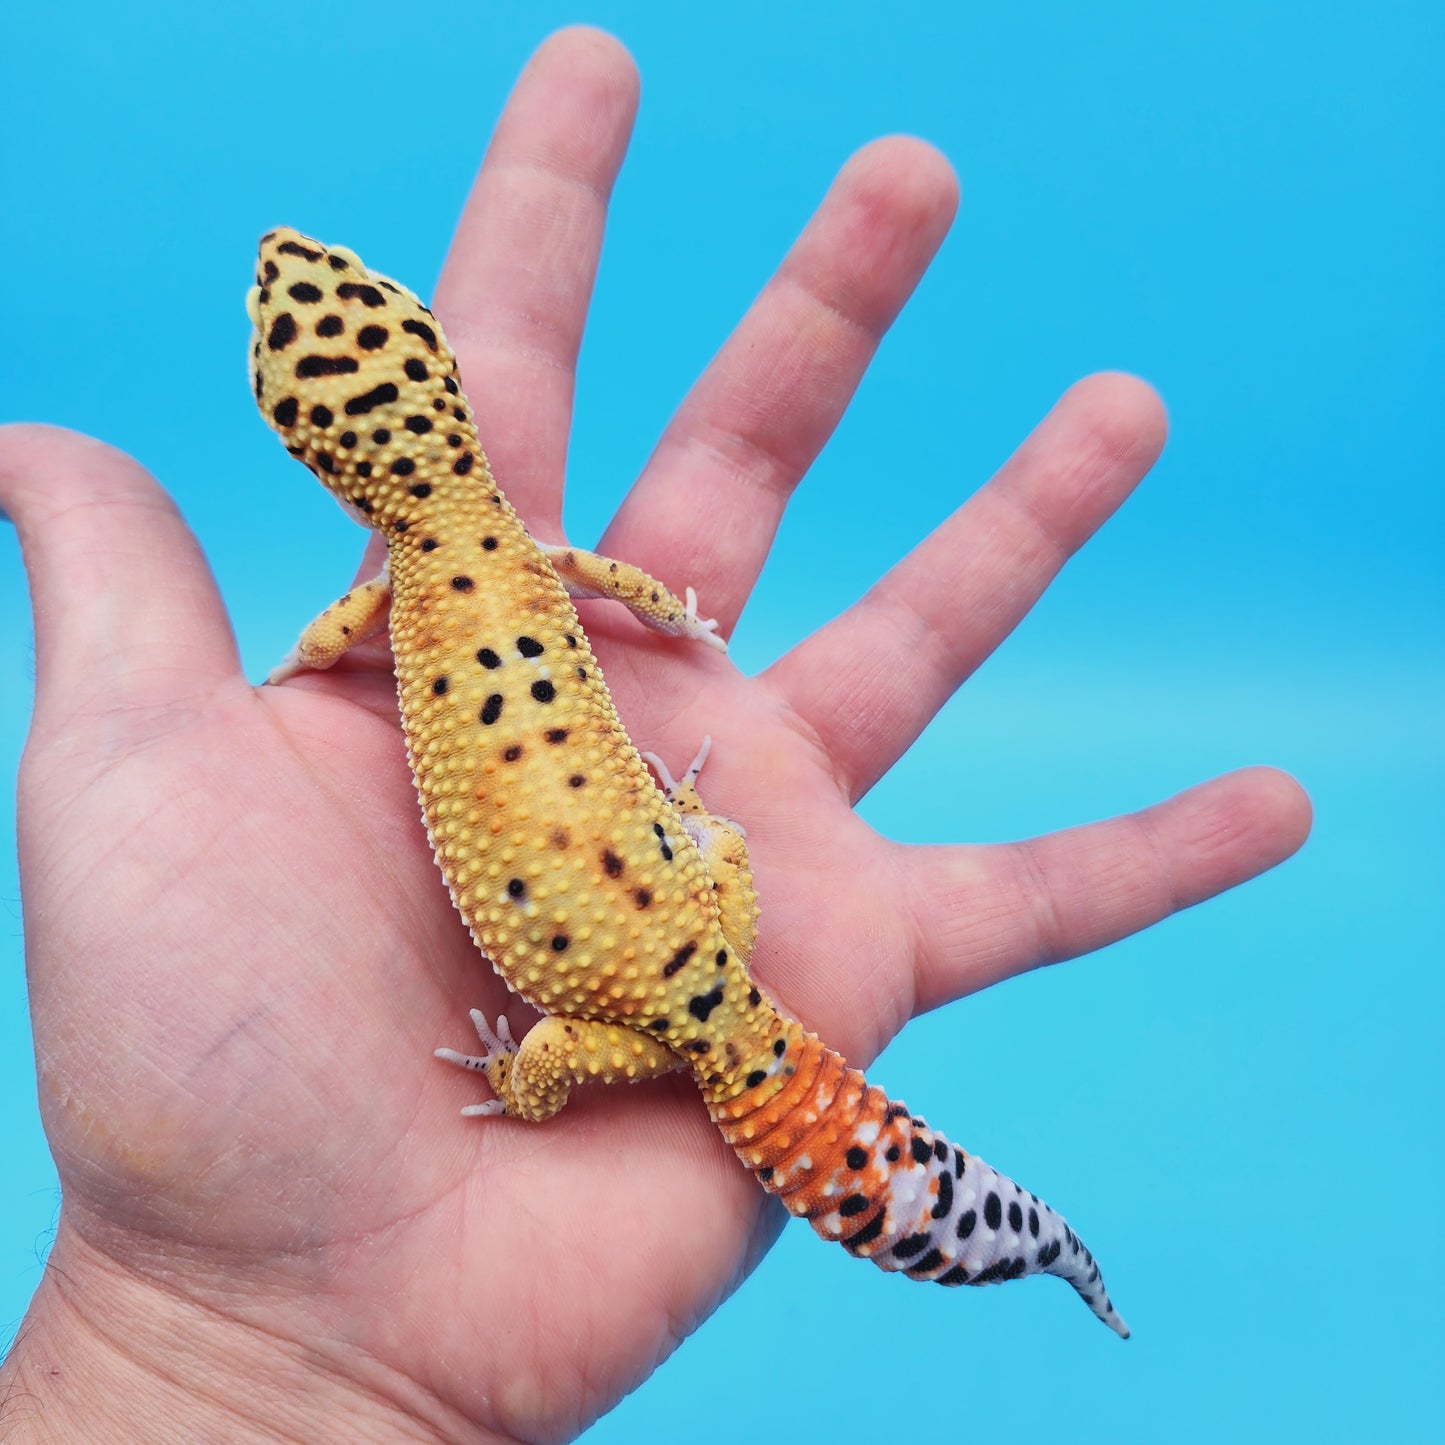 Female Inferno Tangerine Bold Cross Leopard Gecko